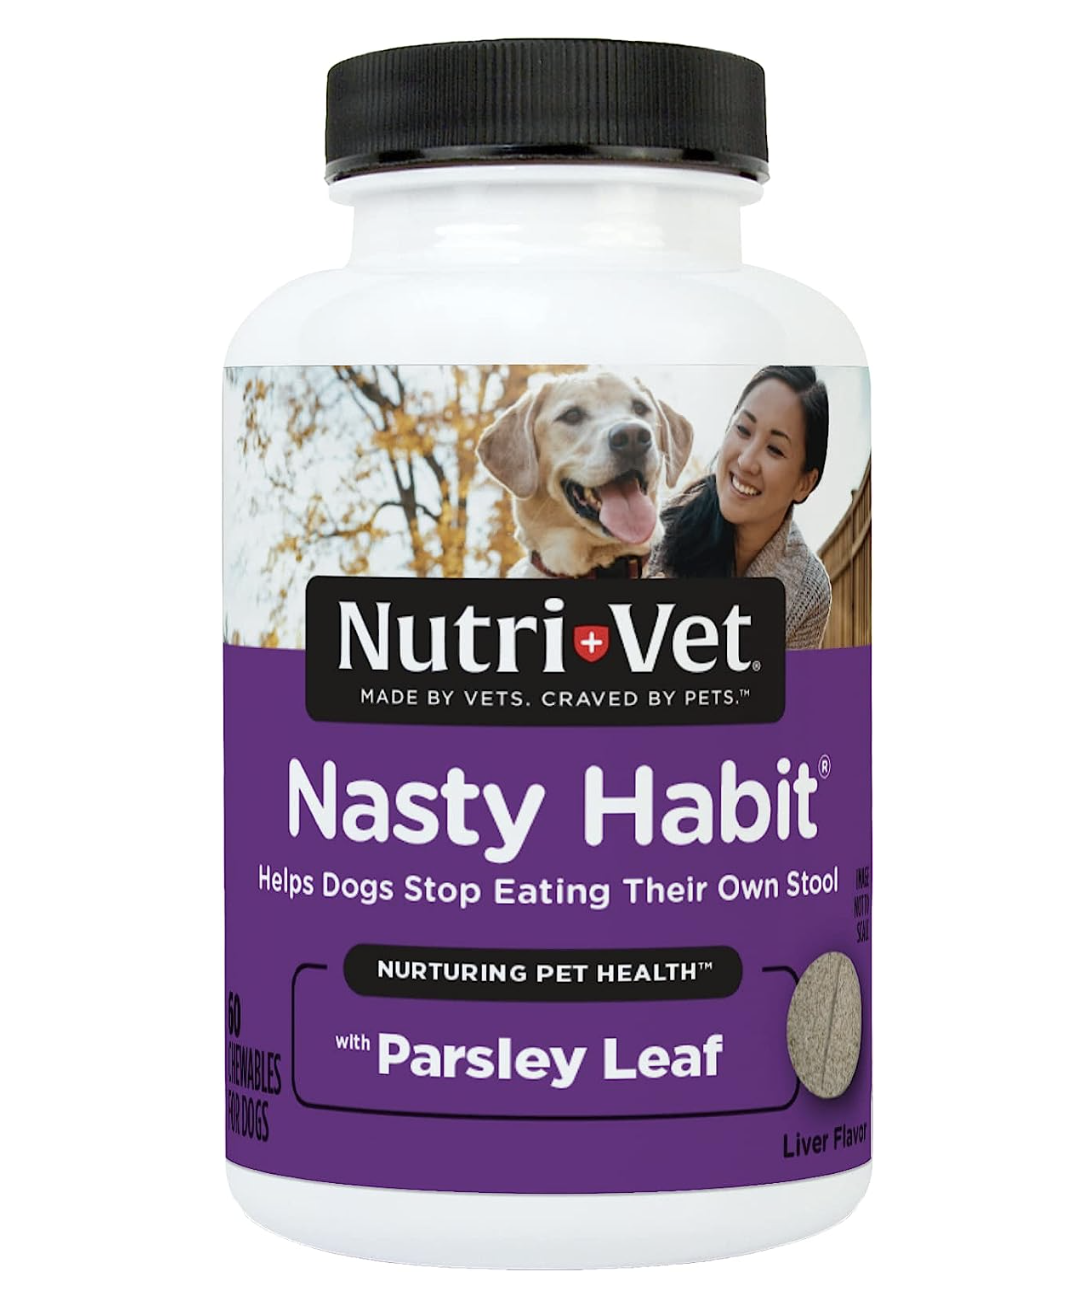 1. Nutri-Vet Nasty Habit Kauwtabletten voor honden